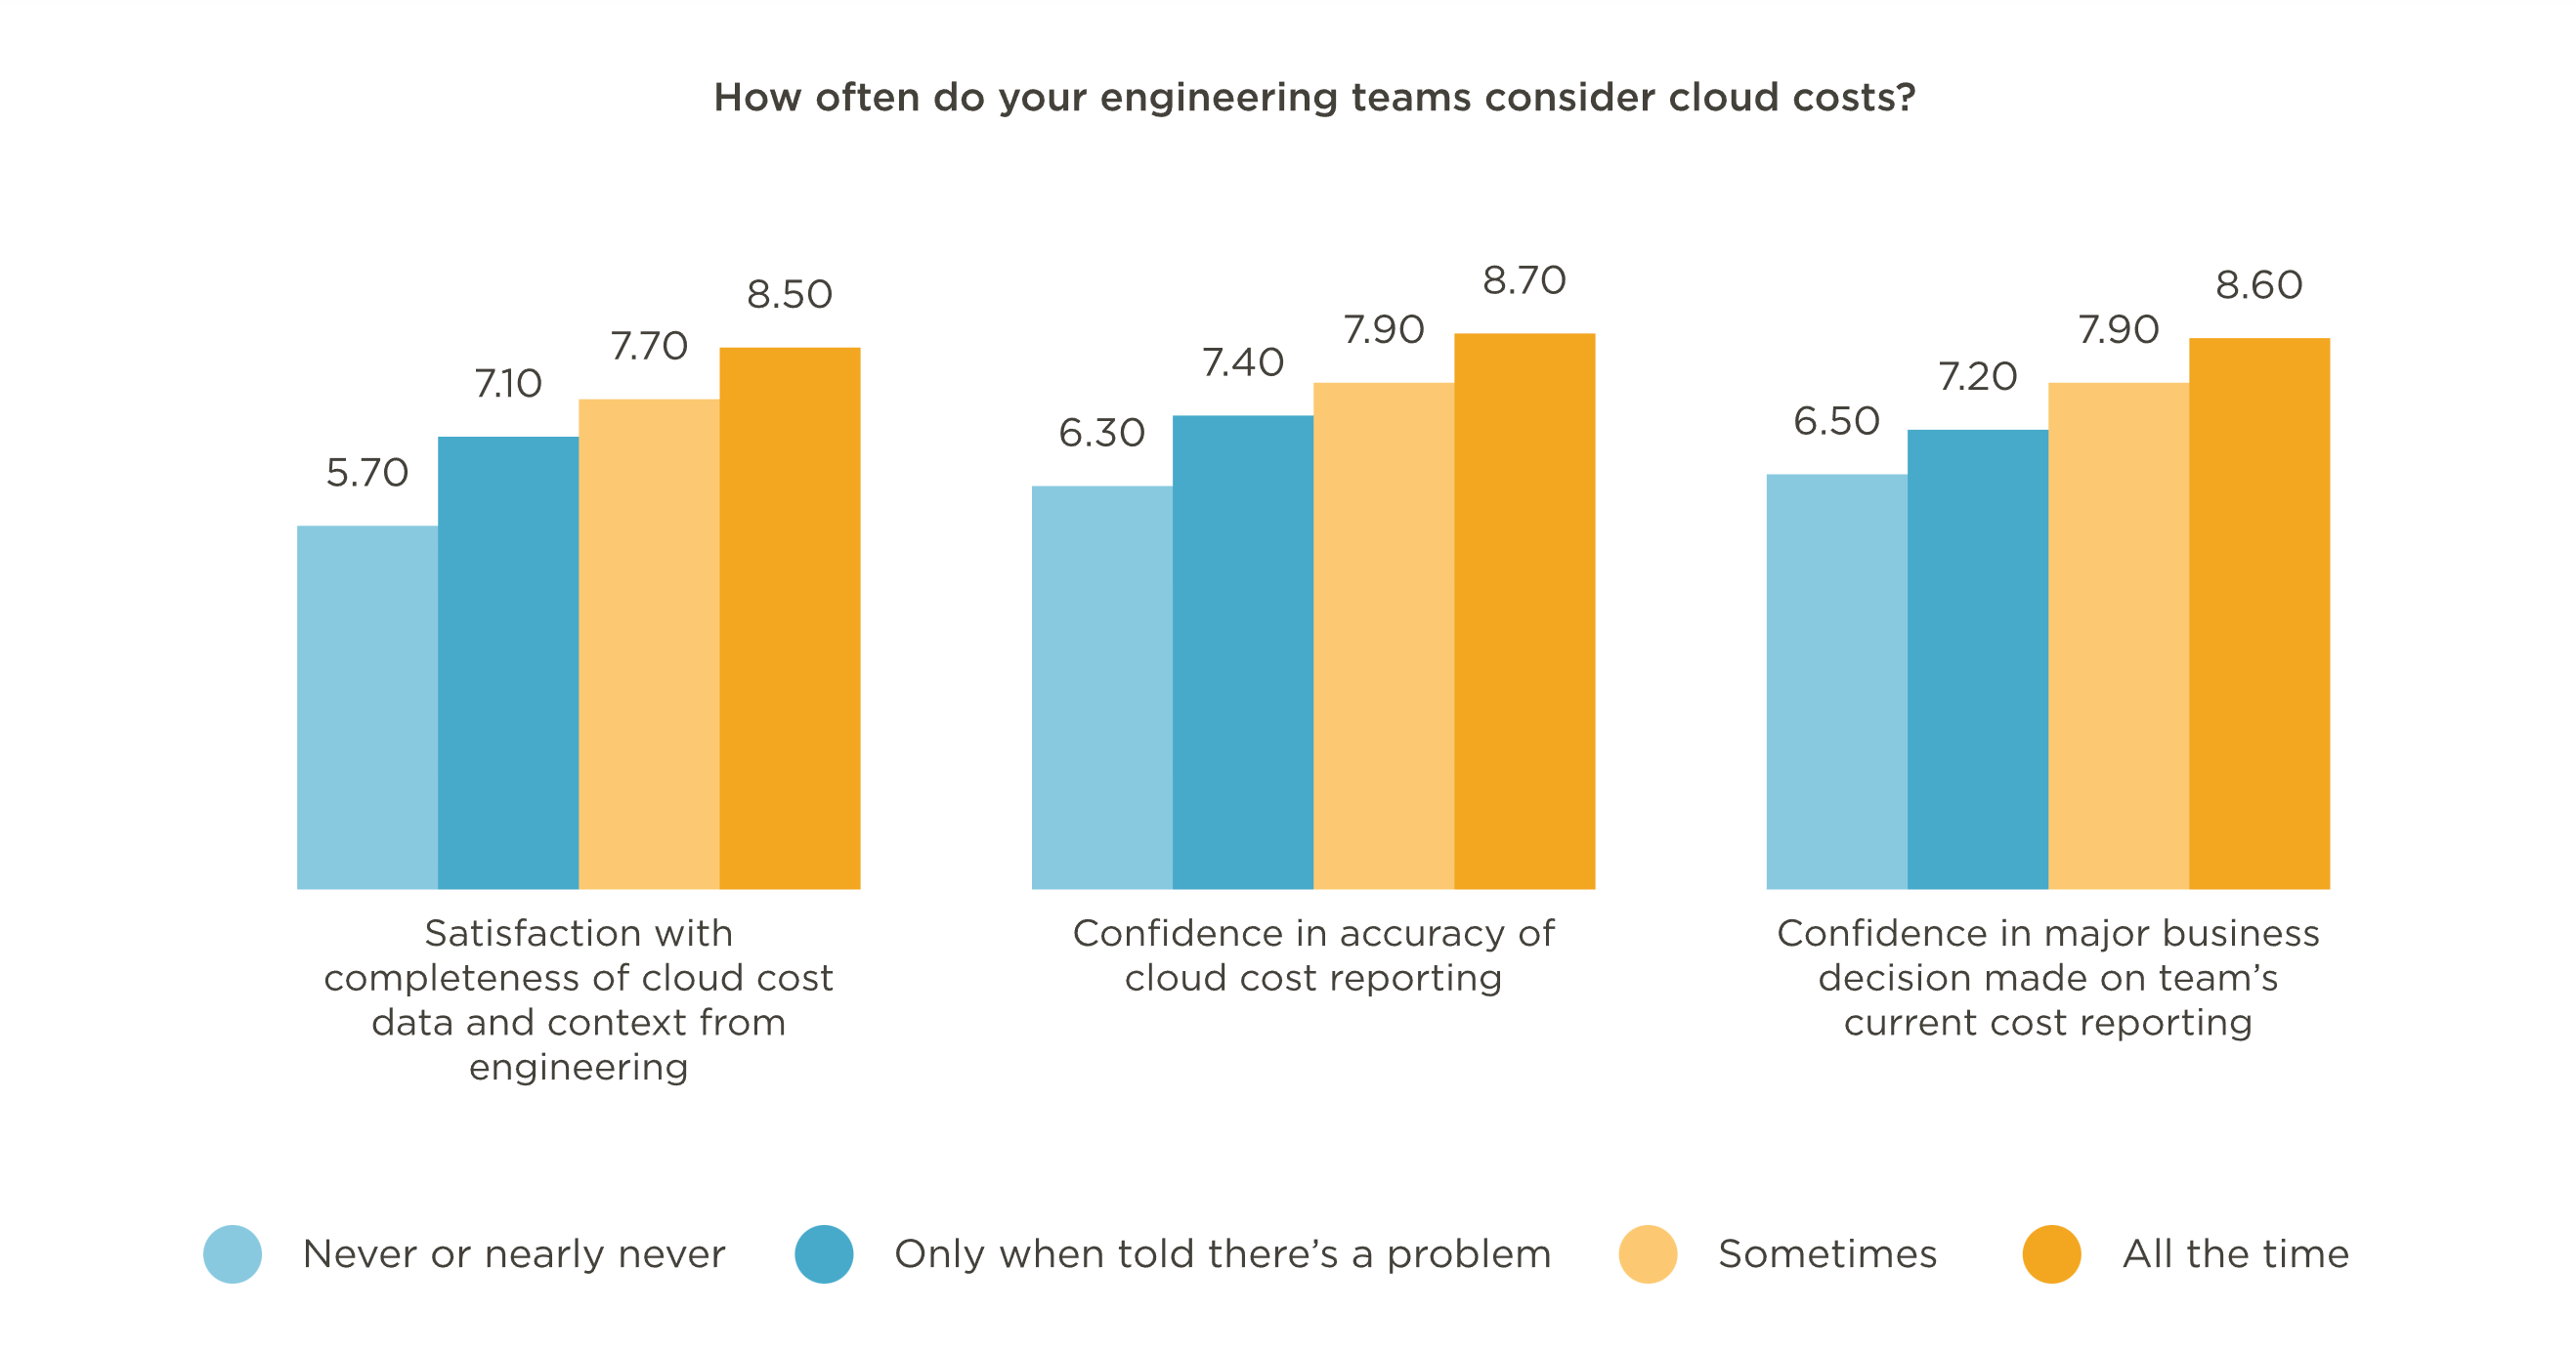 Cloud costs